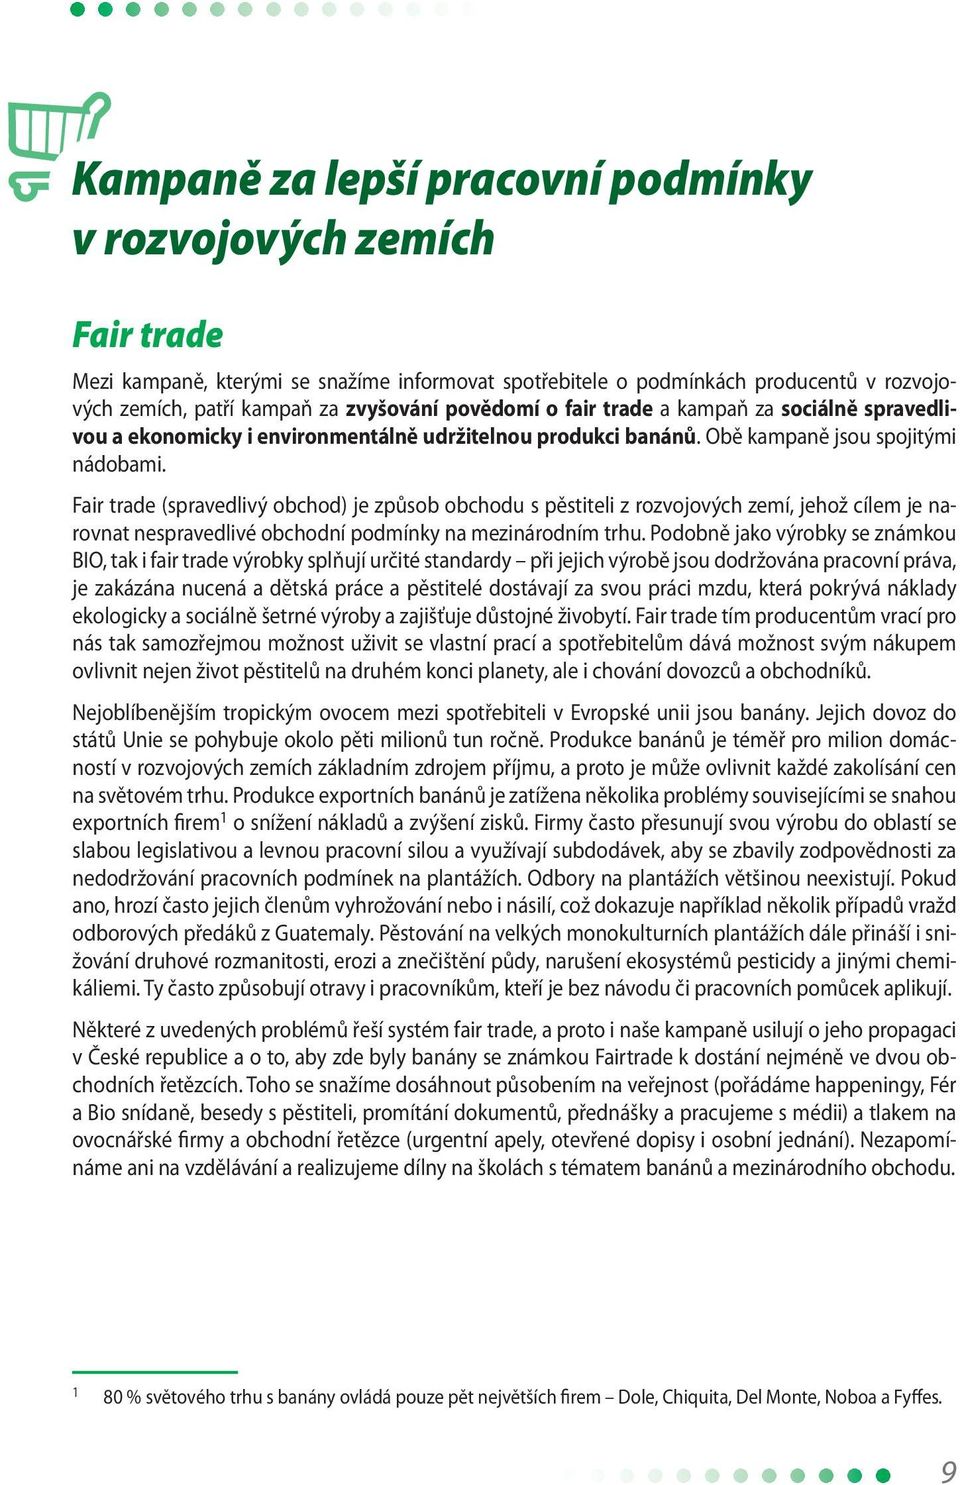 Fair trade (spravedlivý obchod) je způsob obchodu s pěstiteli z rozvojových zemí, jehož cílem je narovnat nespravedlivé obchodní podmínky na mezinárodním trhu.